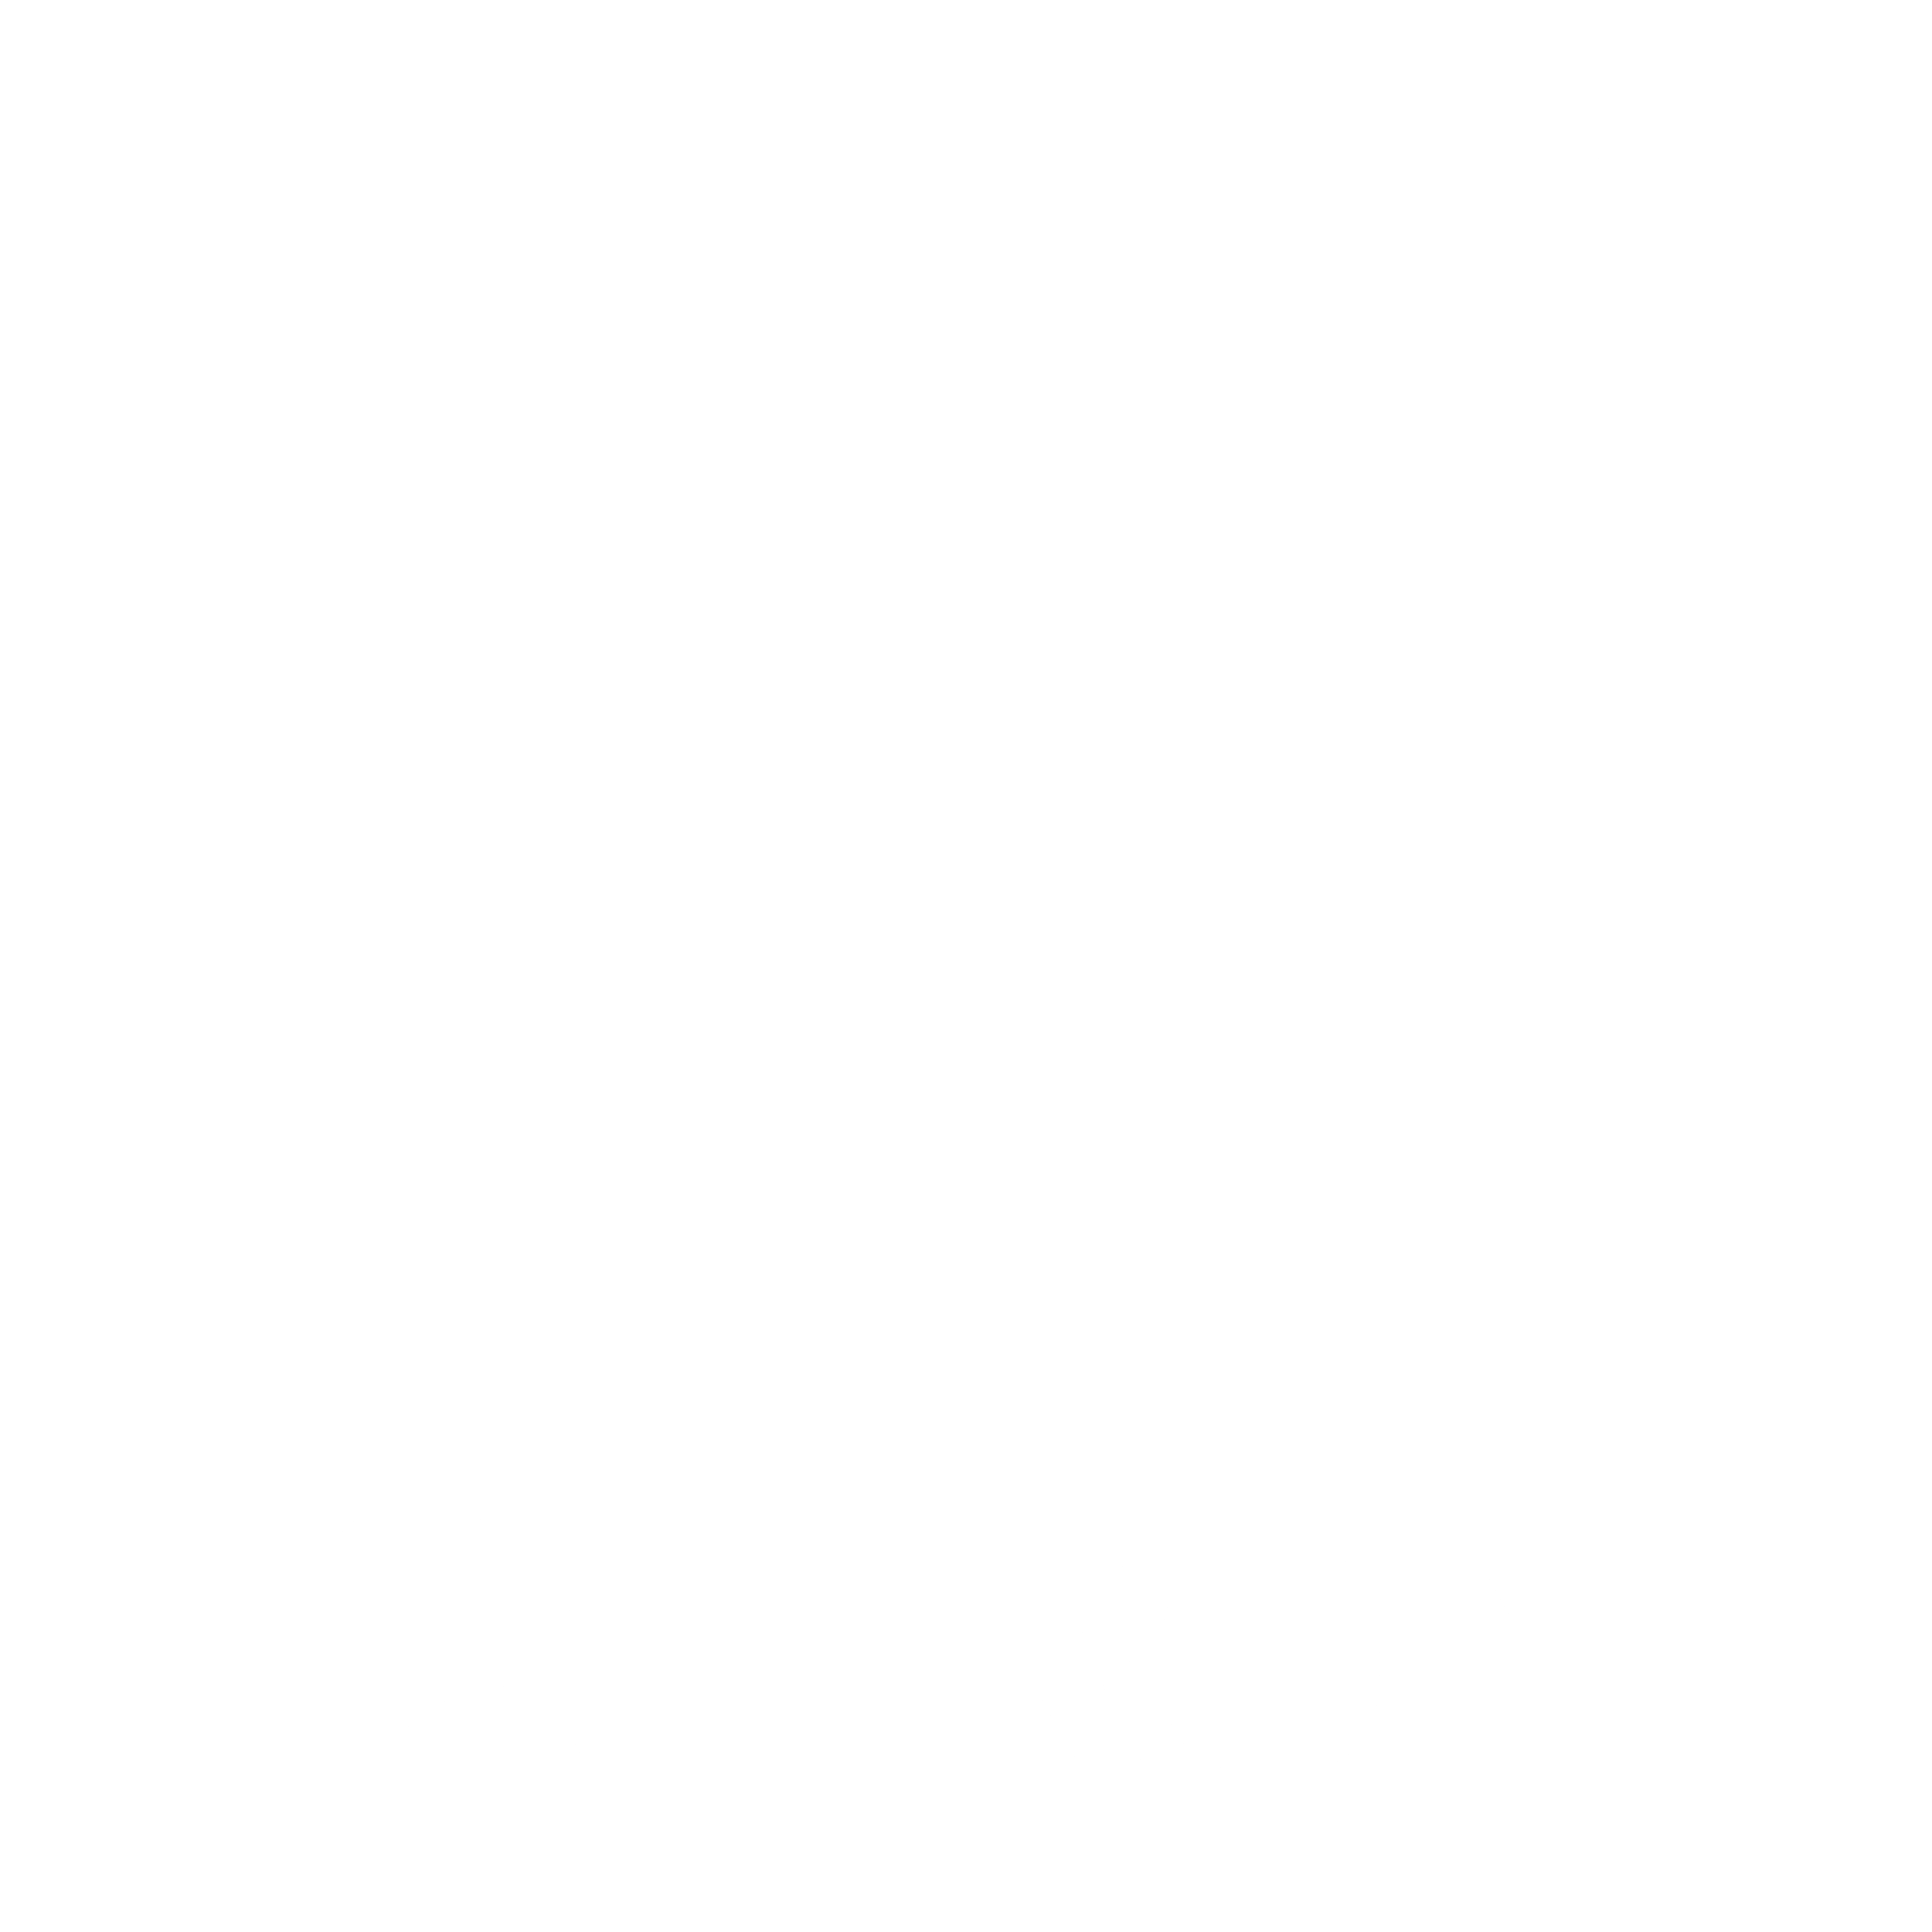 Petron Logo - Petron Logo PNG Transparent & SVG Vector